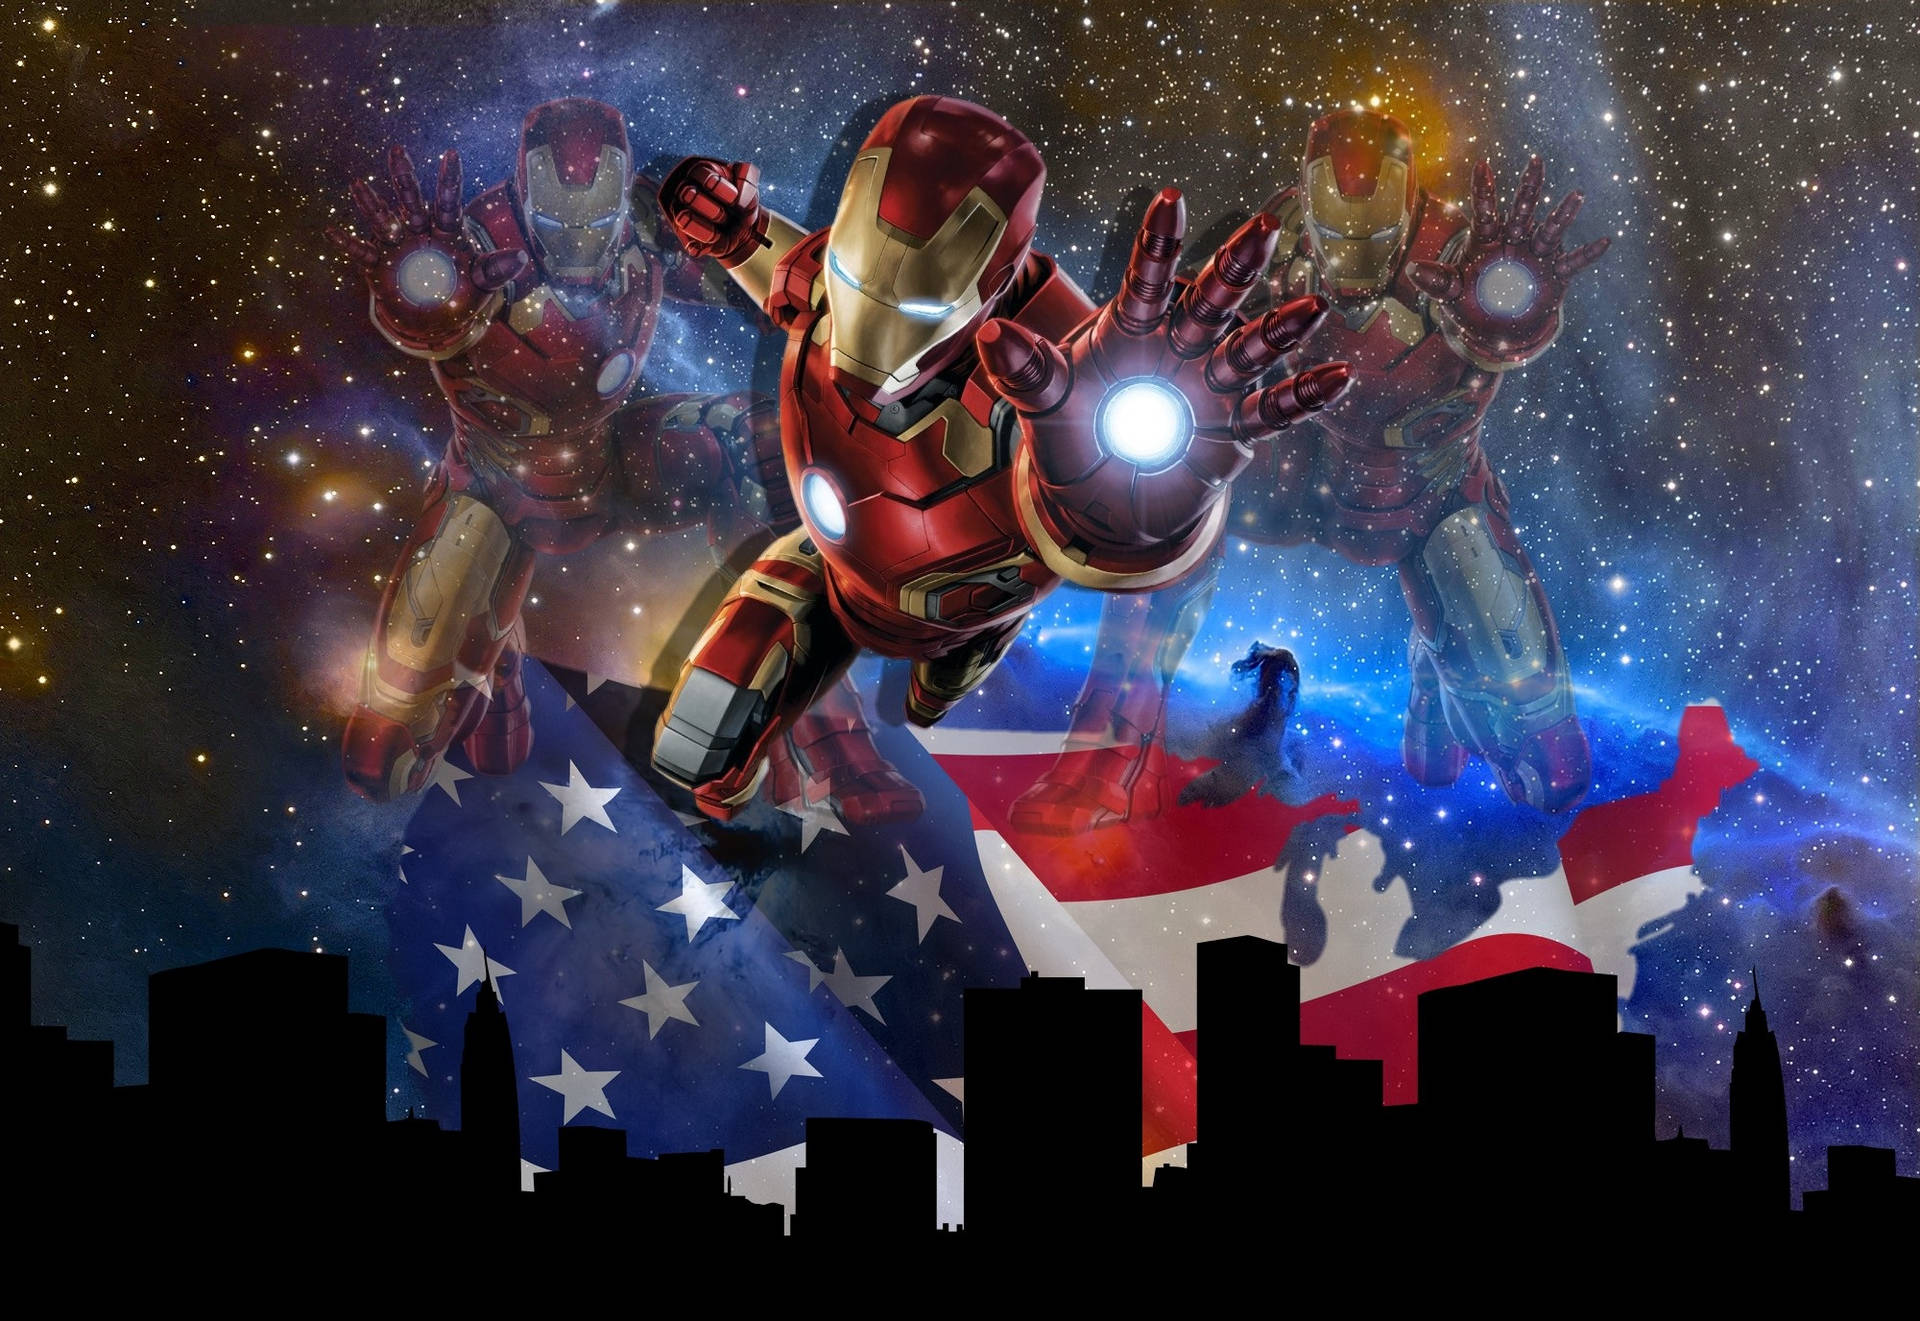 Cool Iron Man Galaxy Art Wallpaper